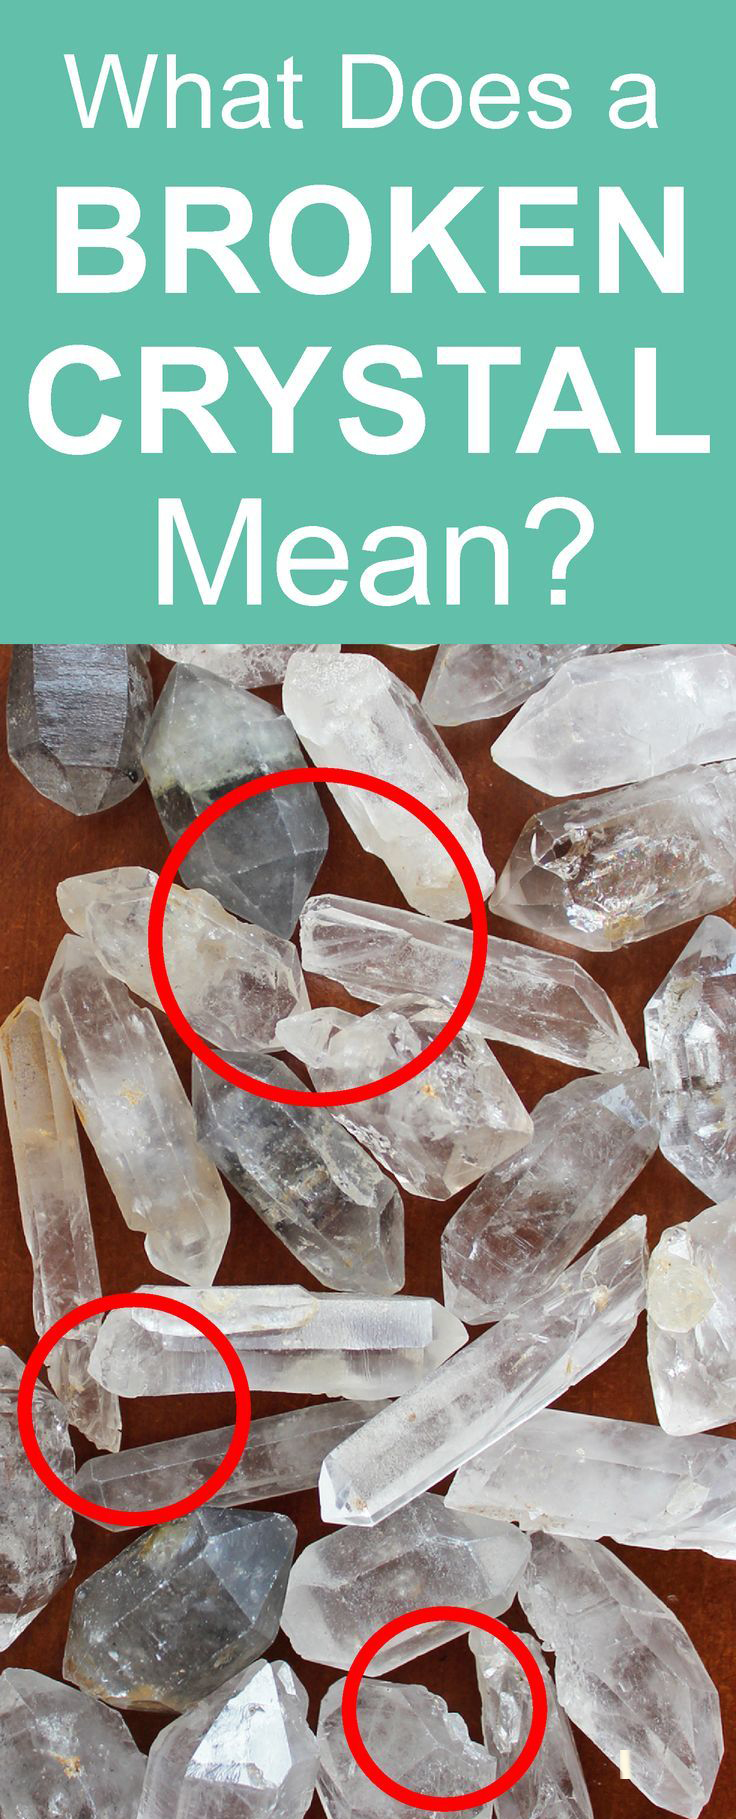 ¿Es malo usar un cristal roto?